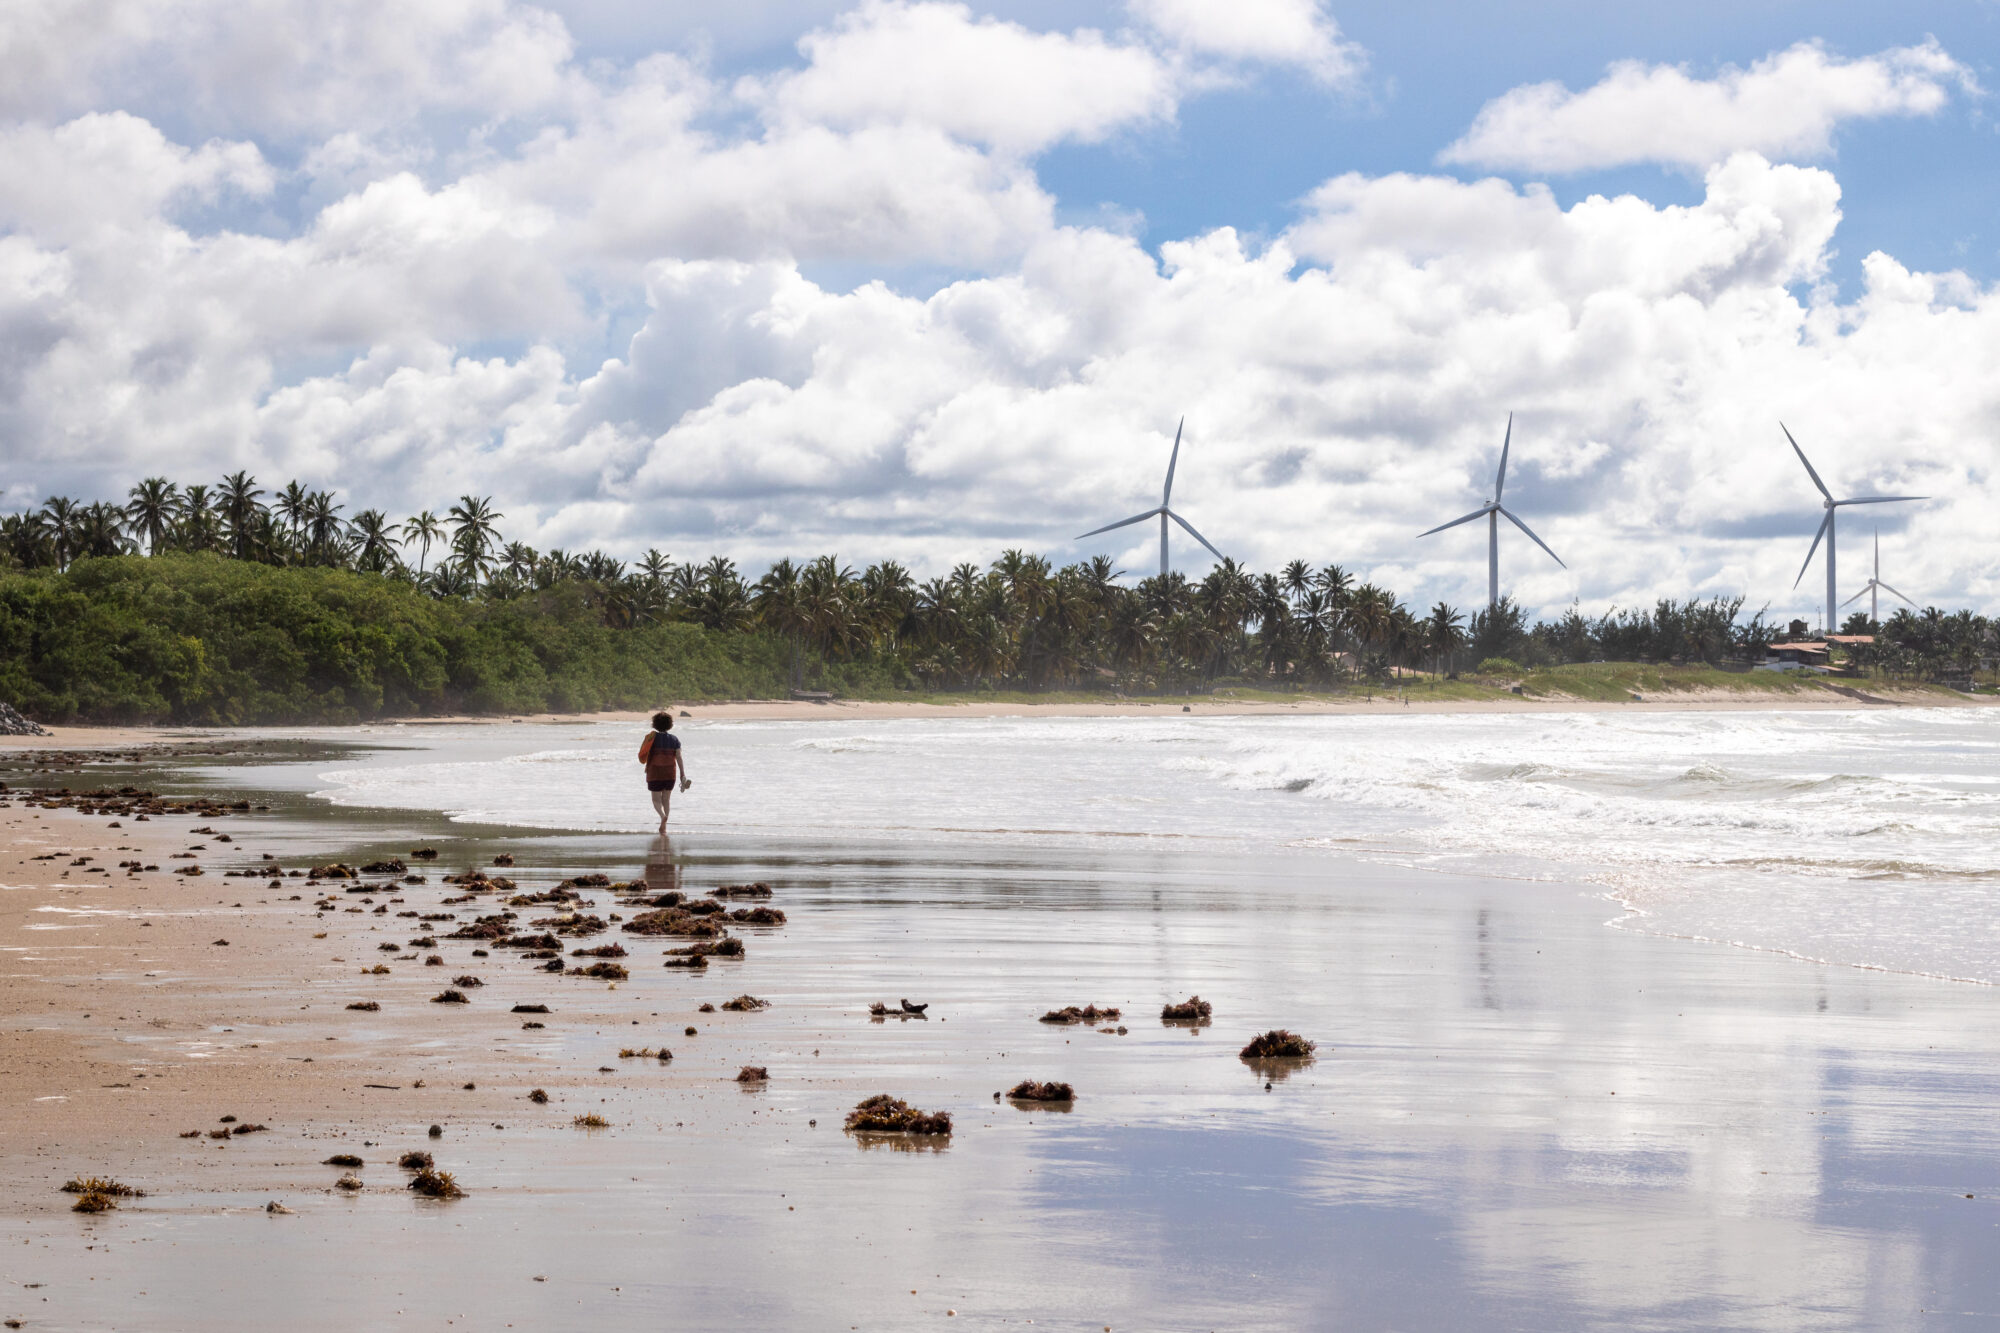 Uma pessoa caminhando em frente ao mar, com moinhos de vento ao fundo.